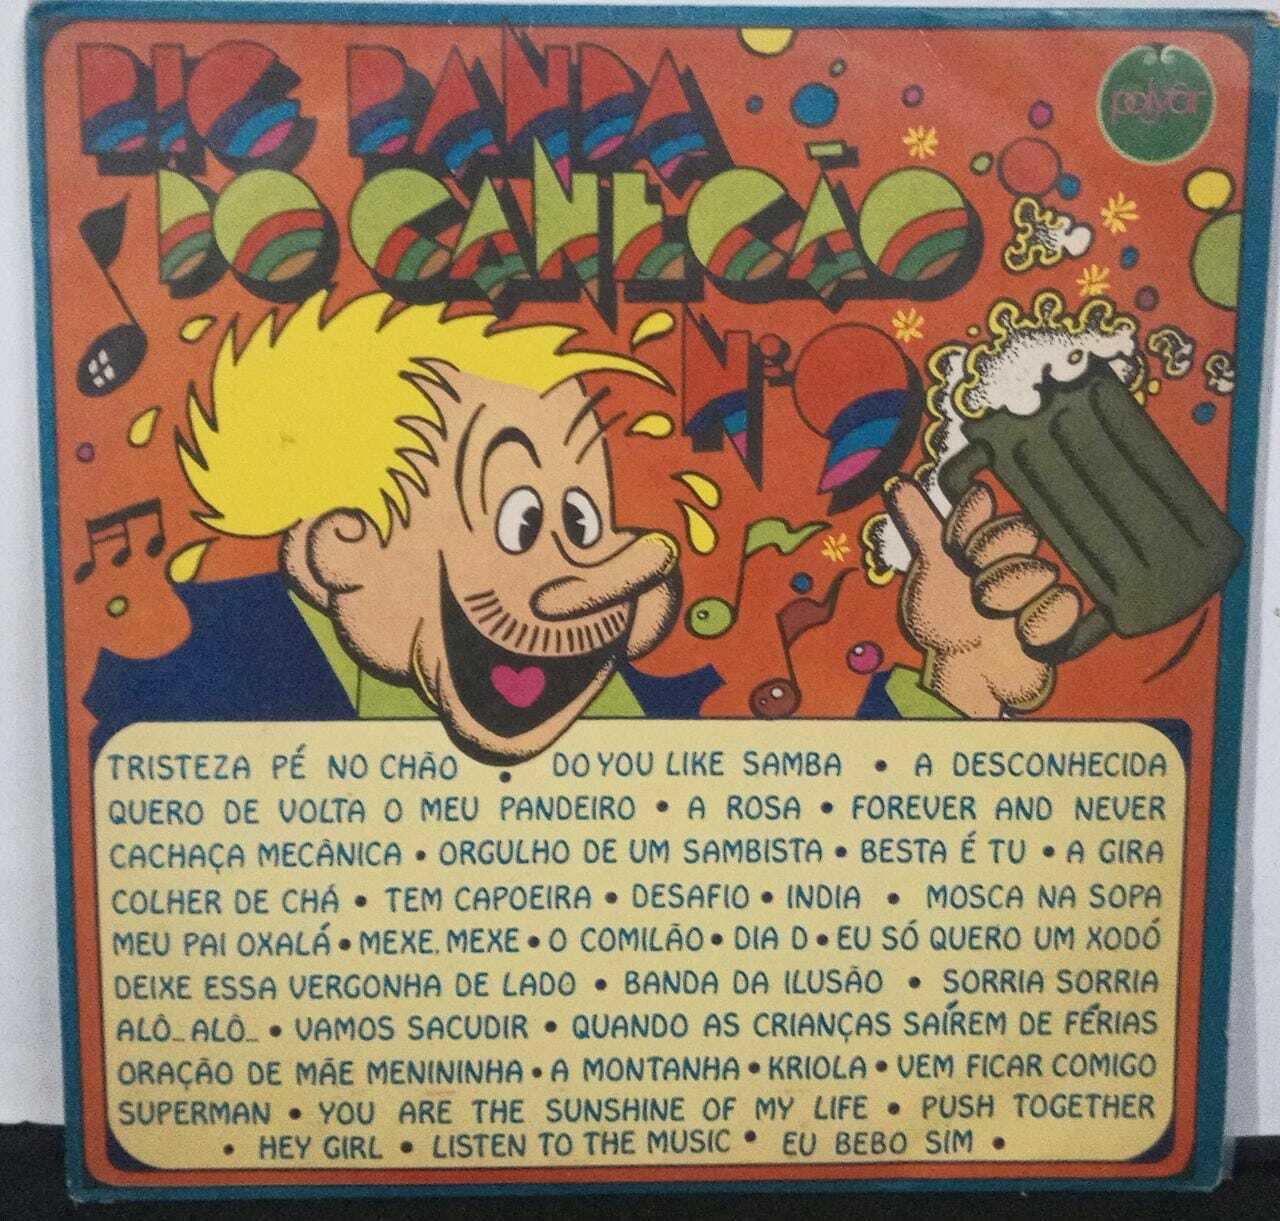 Vinil - Banda do Canecão - Big Banda do Canecão N 9